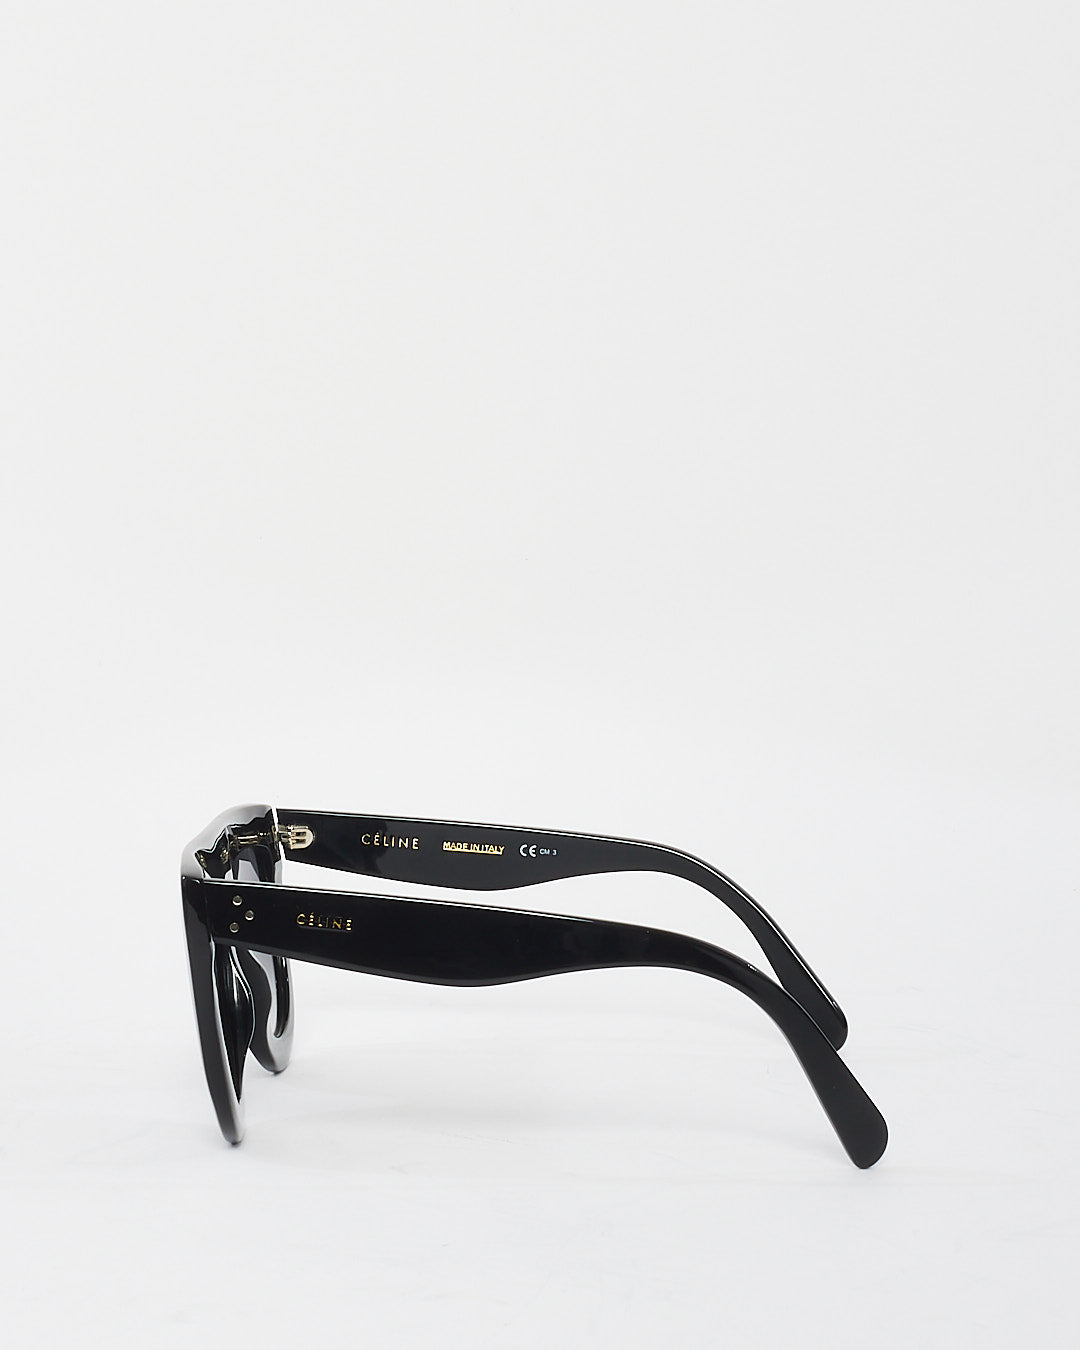 Celine Black Acetate Flat Top Sunglasses CL41398